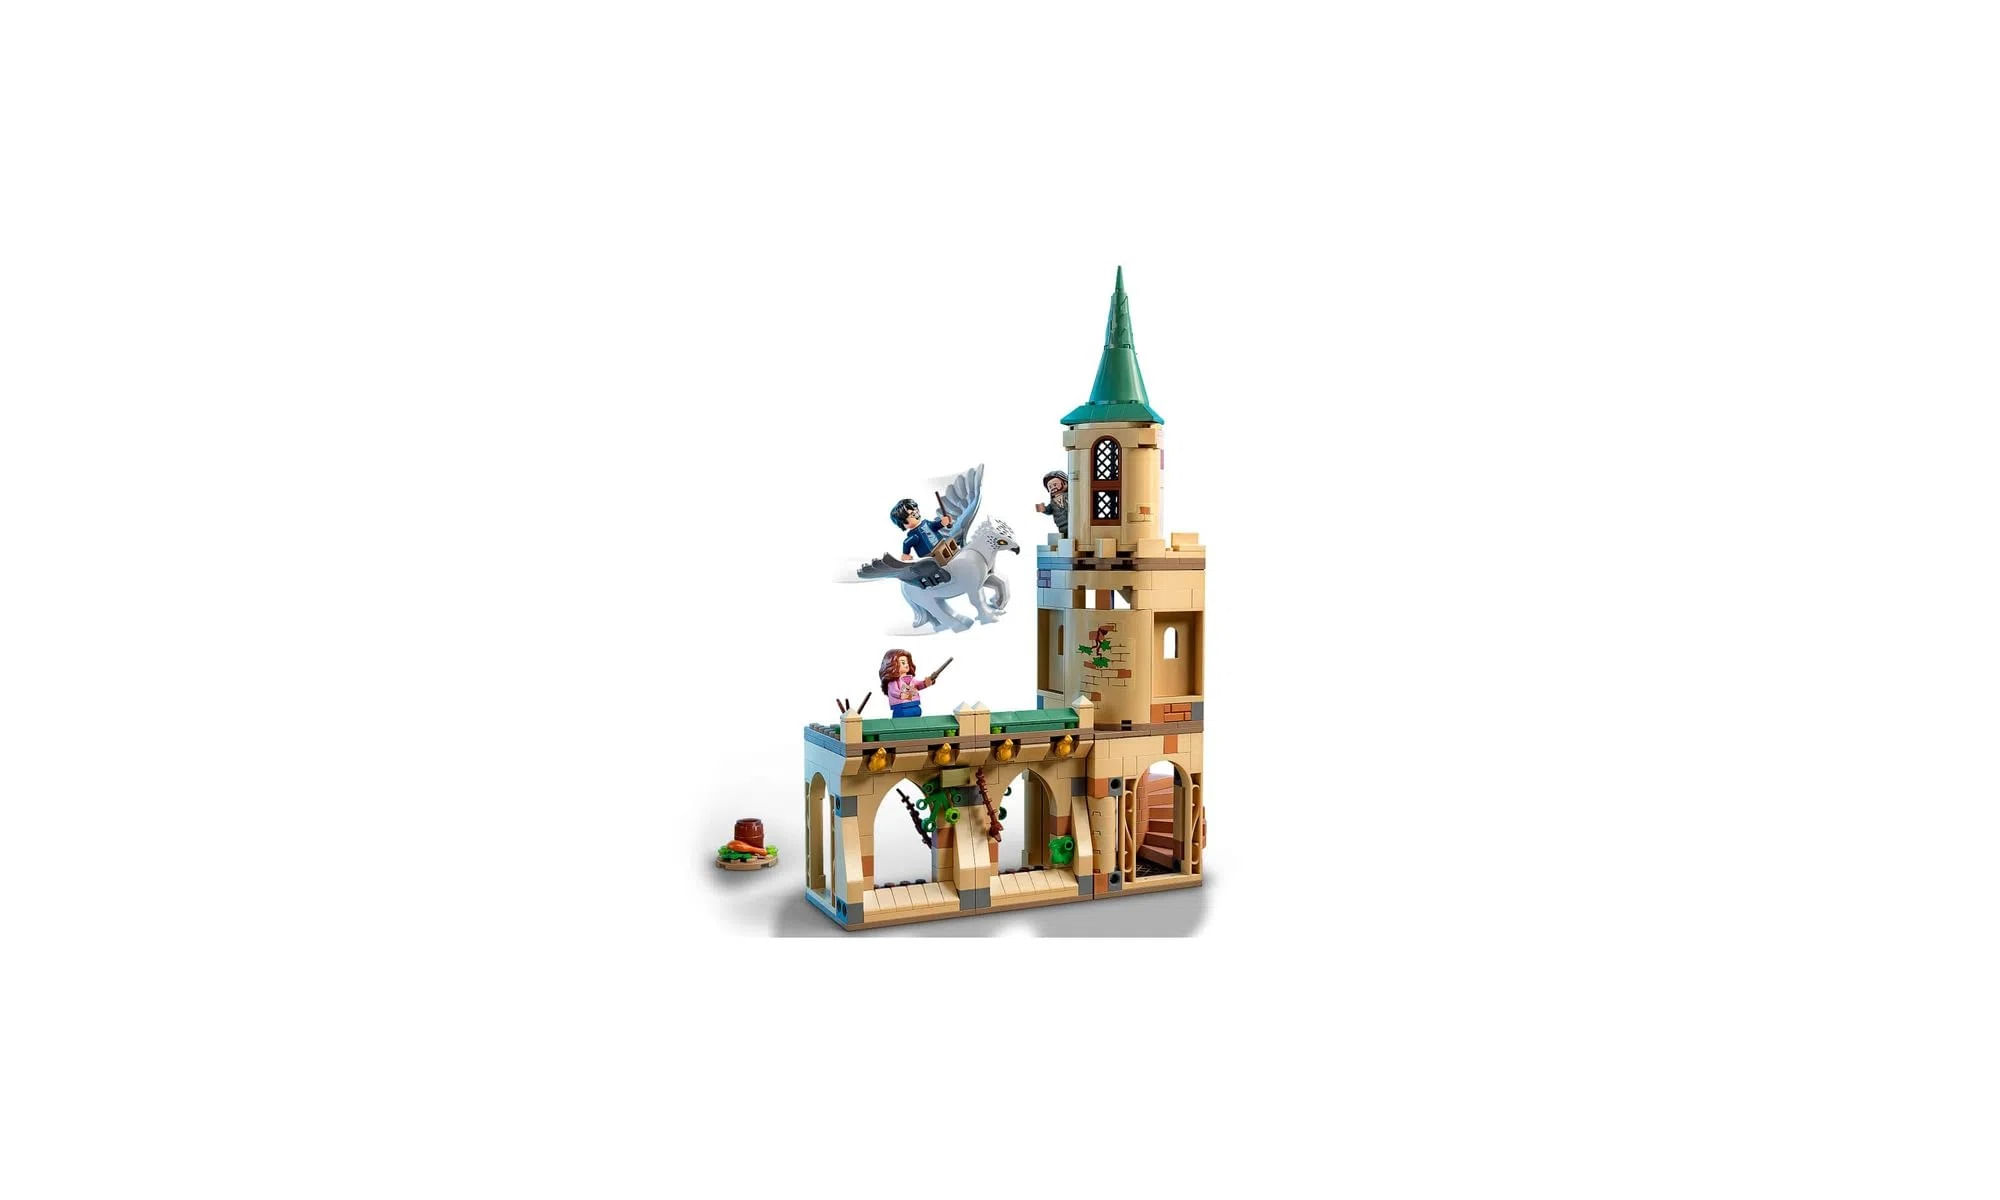 O mundo mágico de Lego Harry Potter